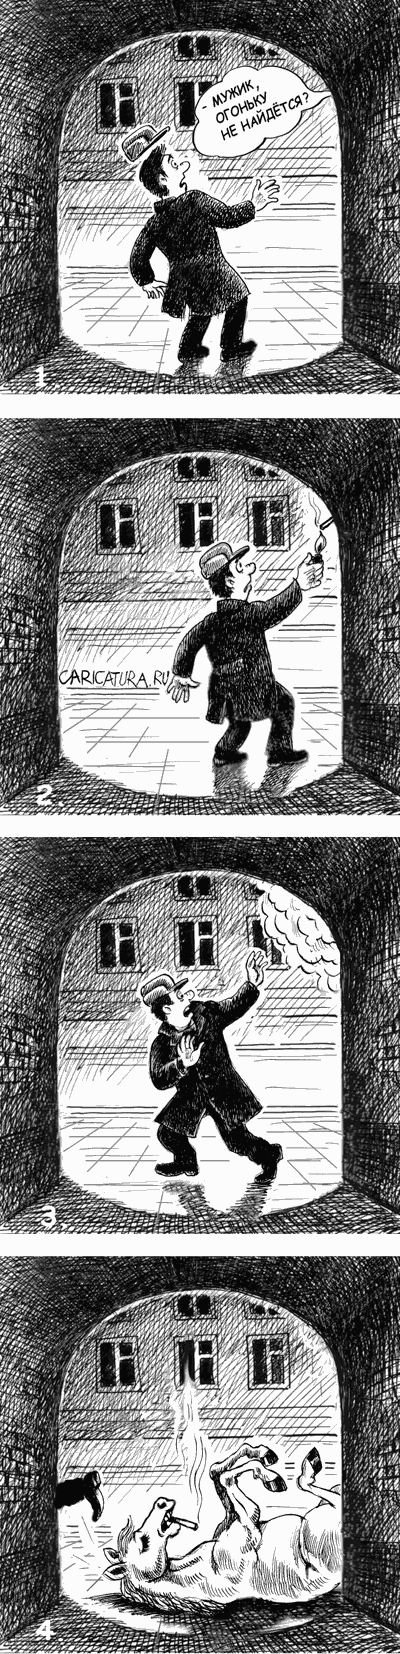 Комикс "О вреде никотина", Владимир Владков